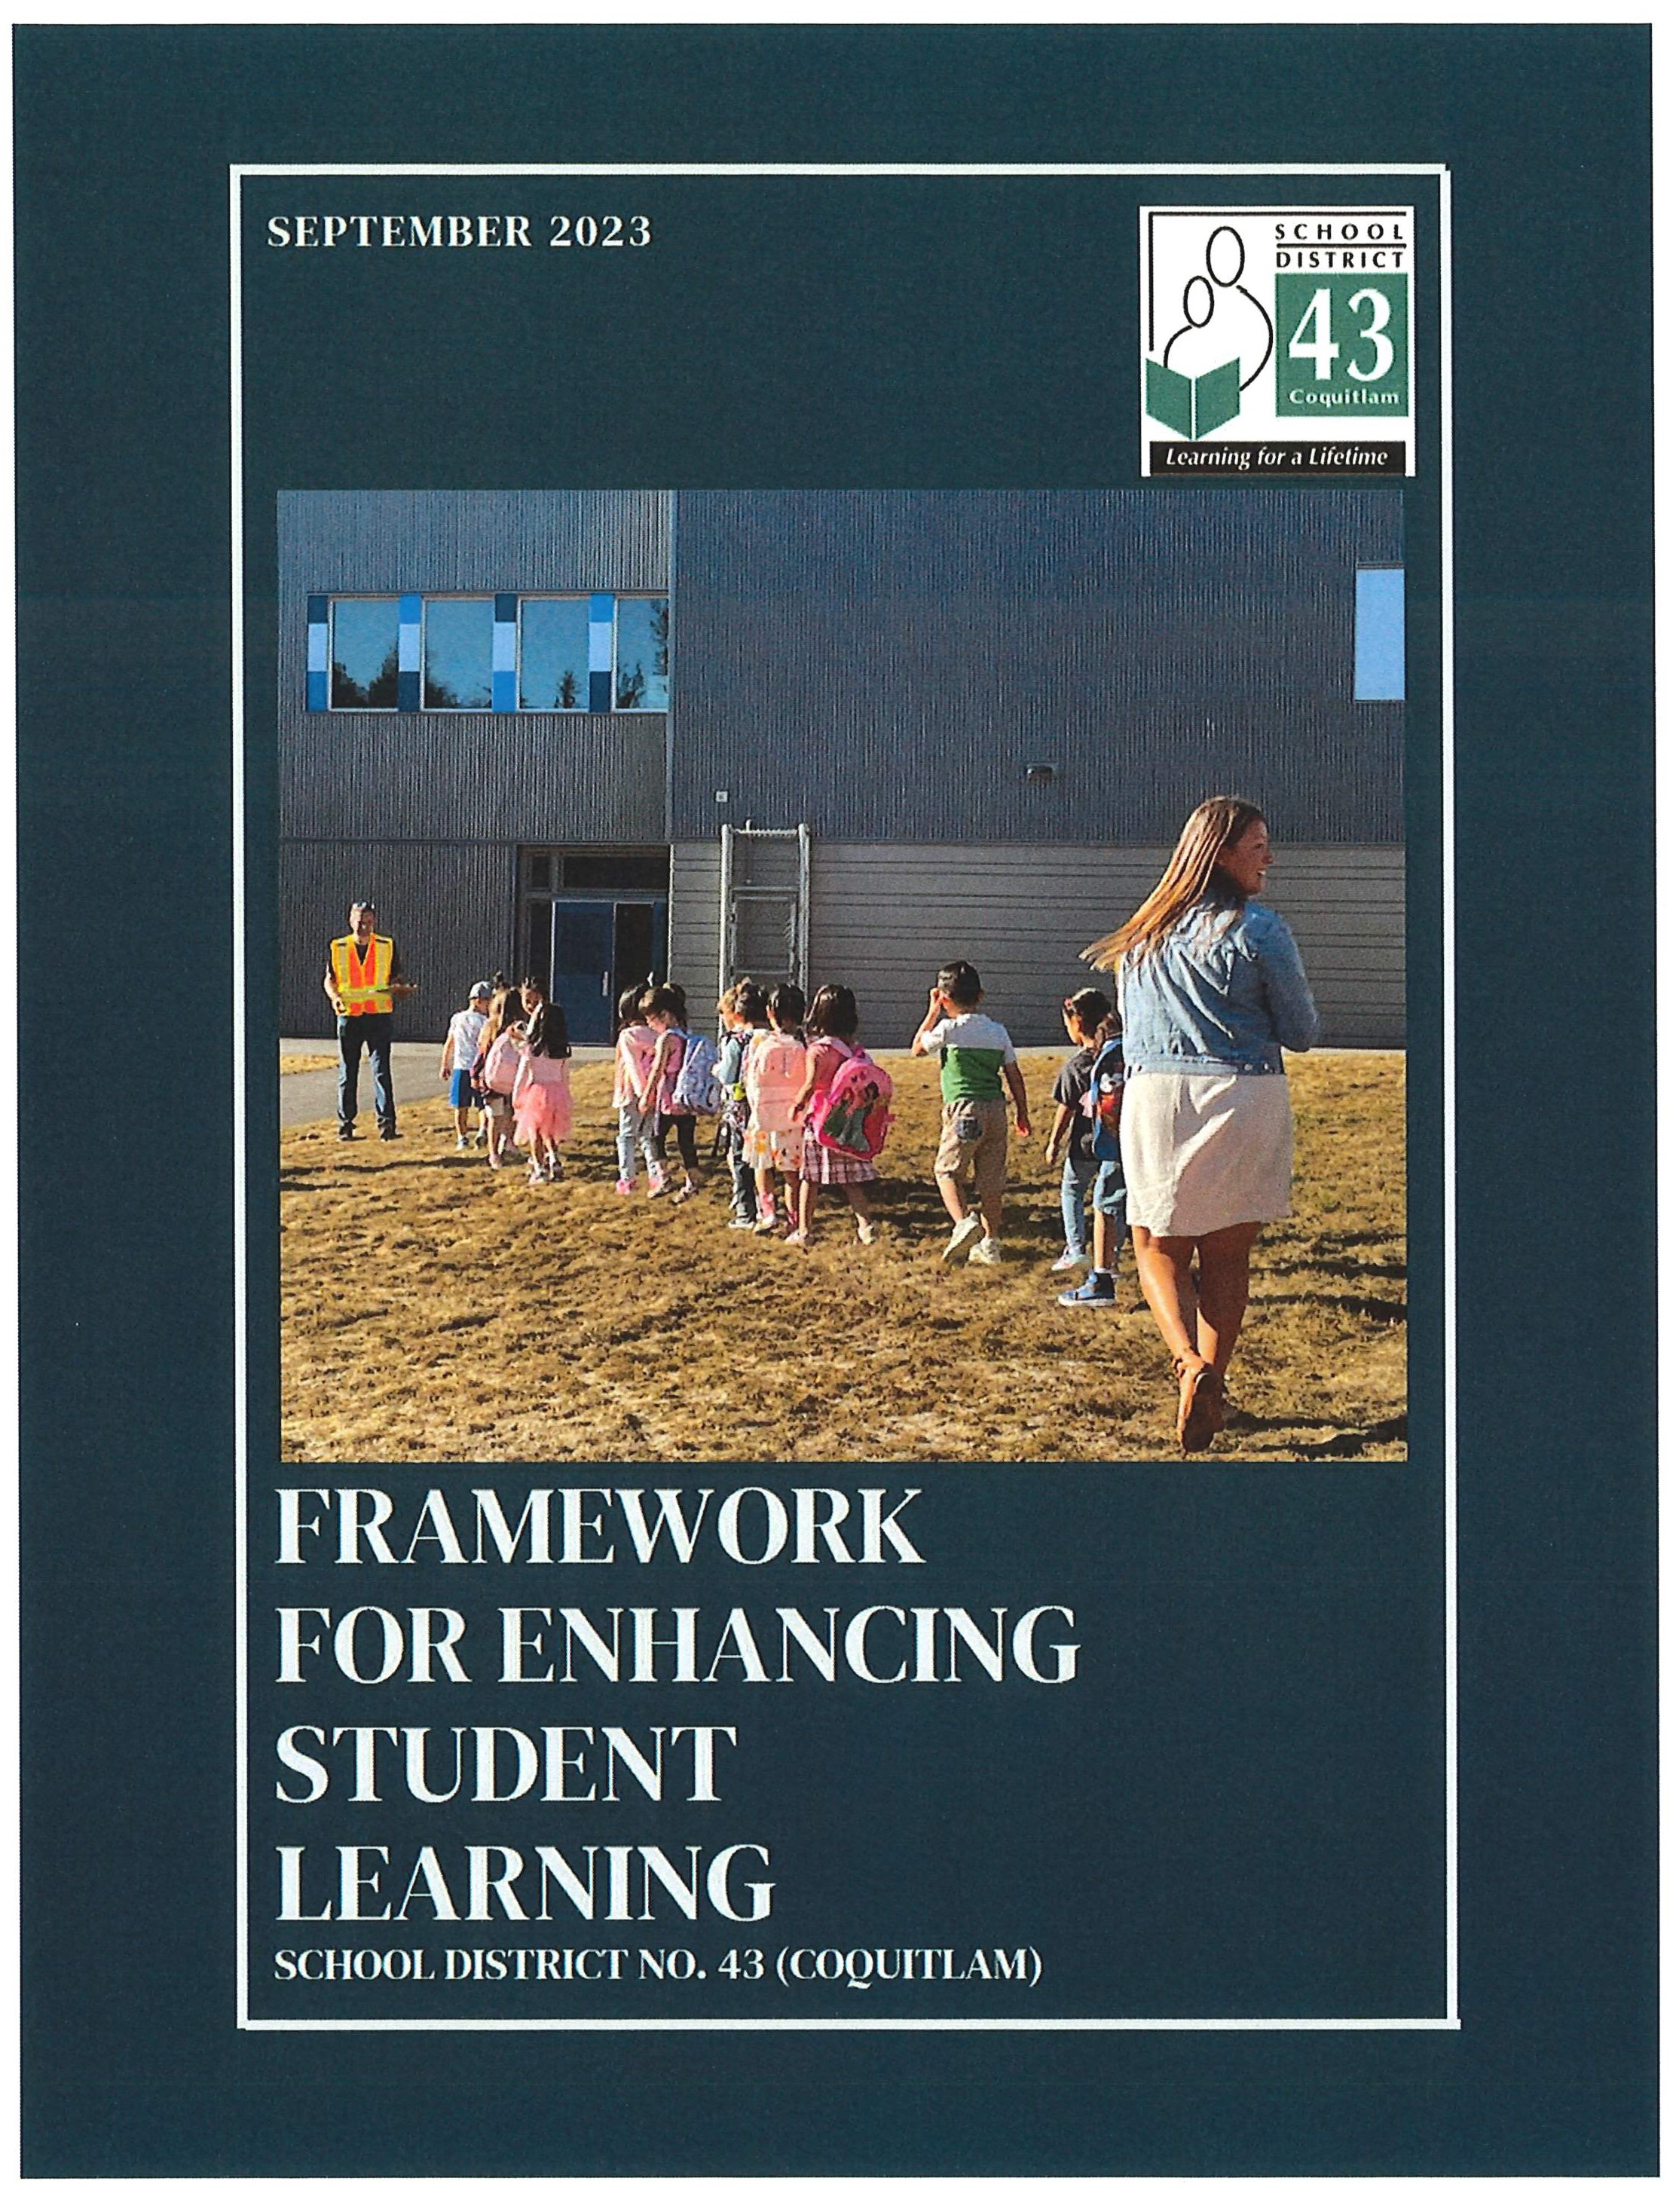 SD43 Framework for Enhancing Student Learning (September 2023) (002)_Page_01.jpg